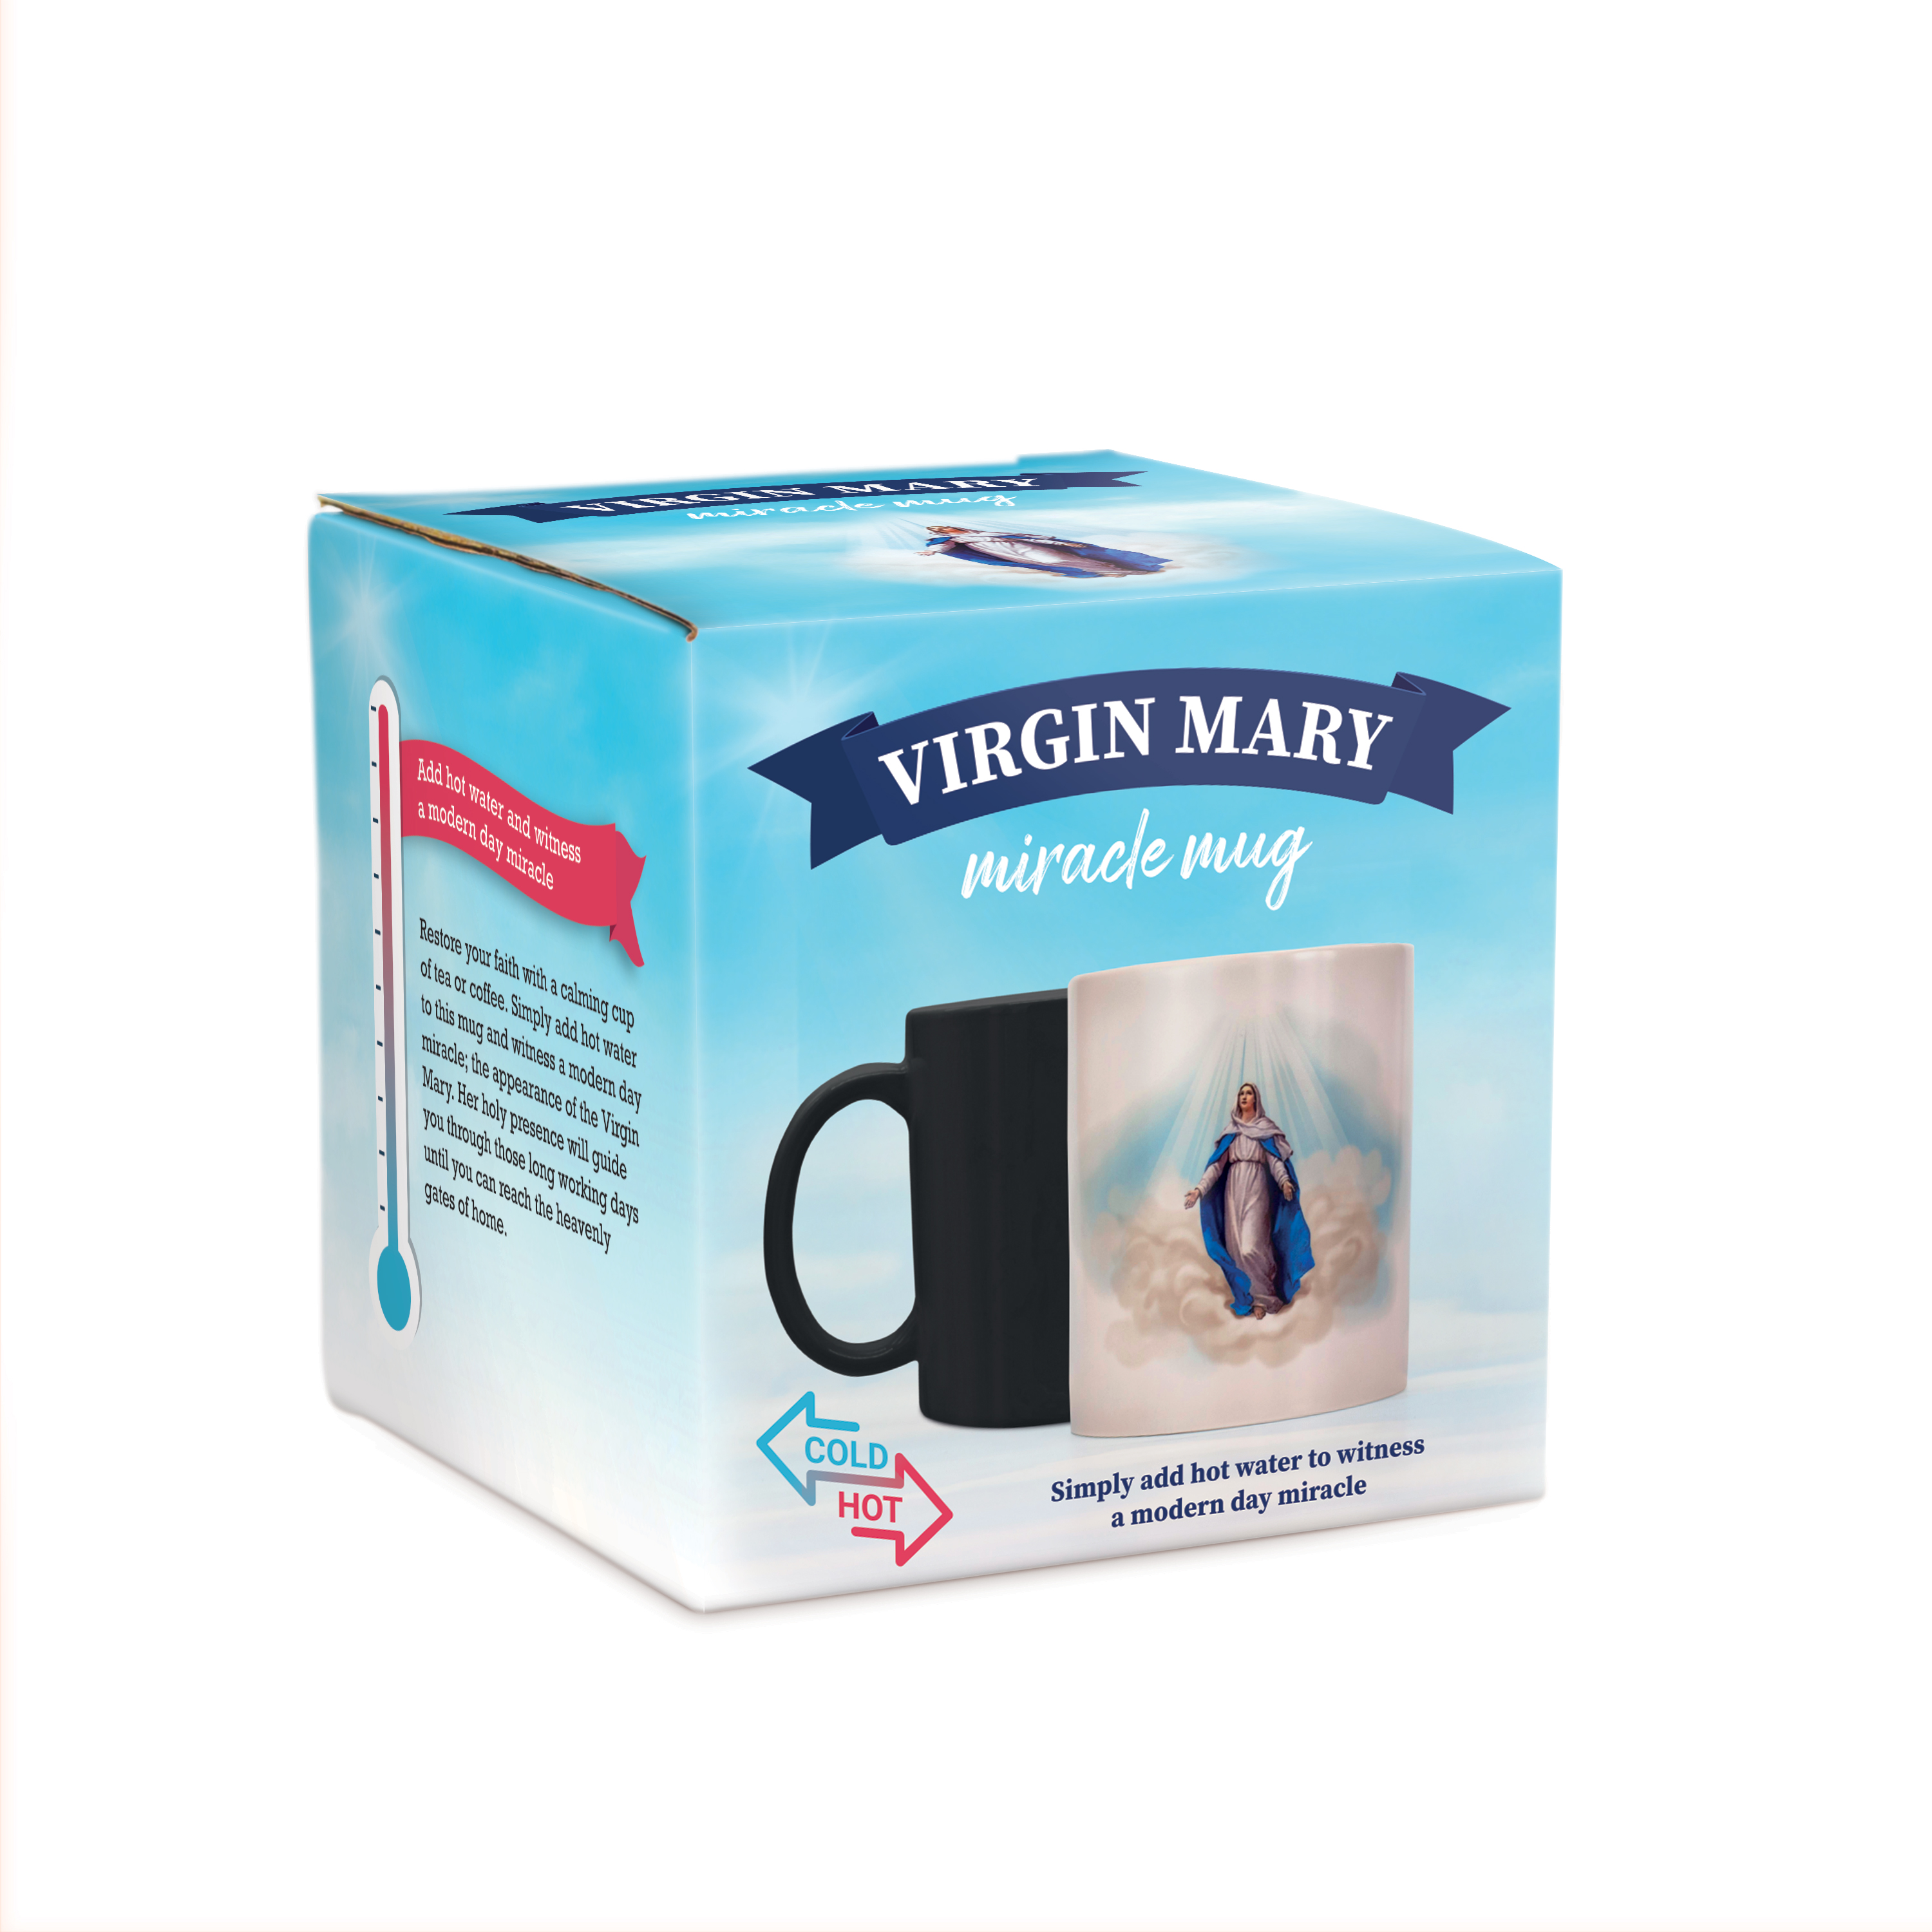 The Virgin Mary Miracle Mug